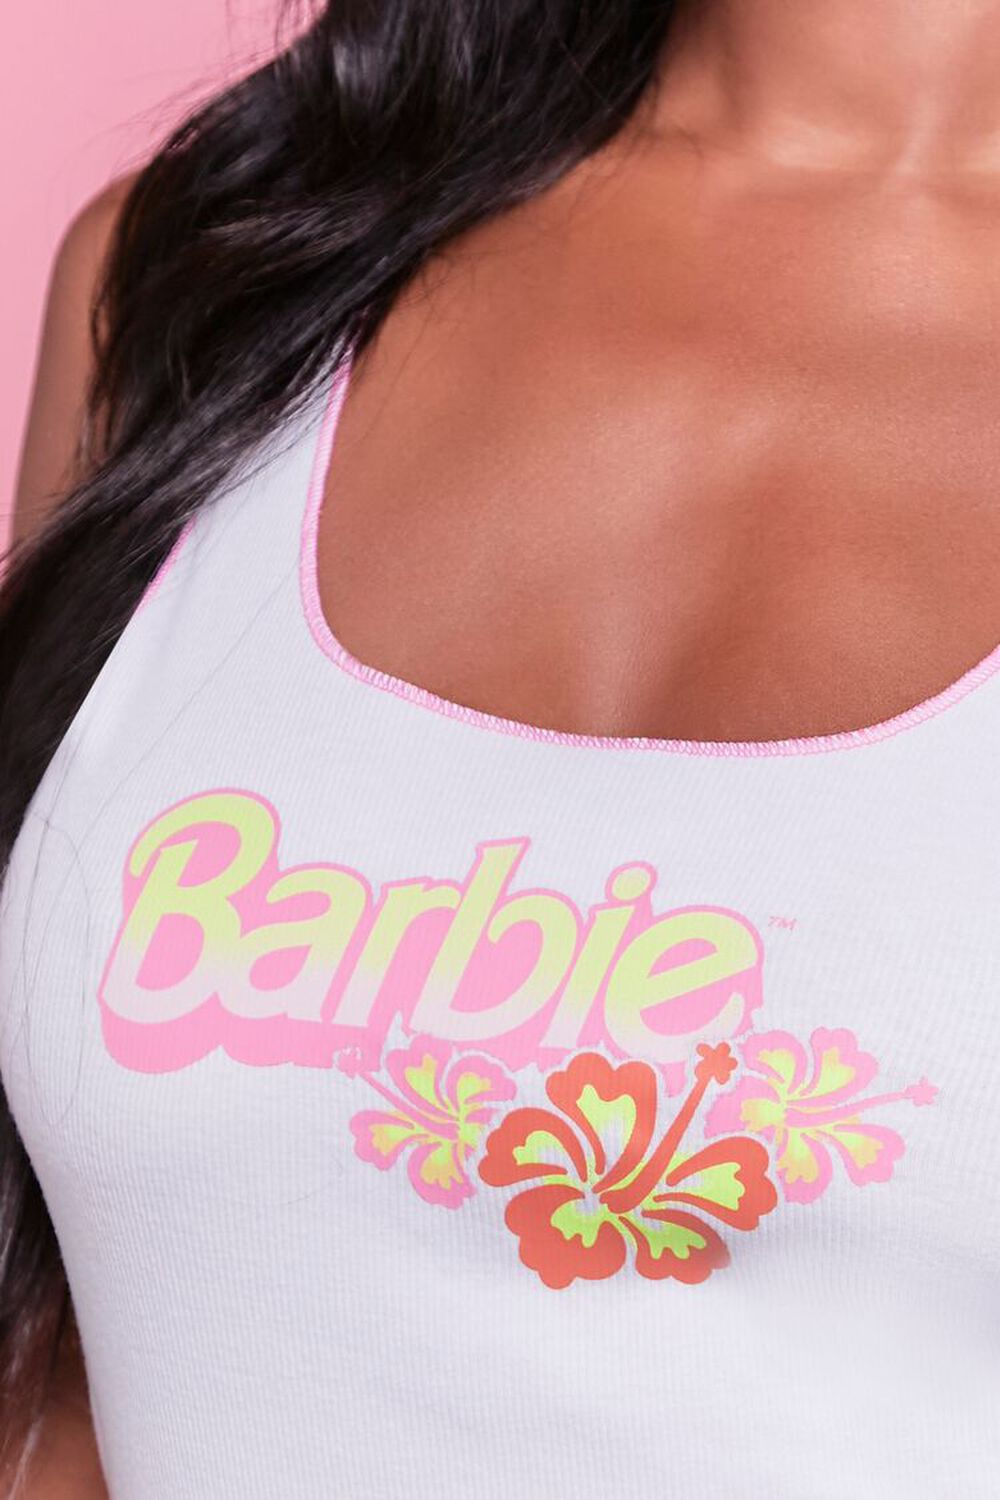 Zeggen bedreiging stof in de ogen gooien Barbie™ Floral Graphic Tank Top